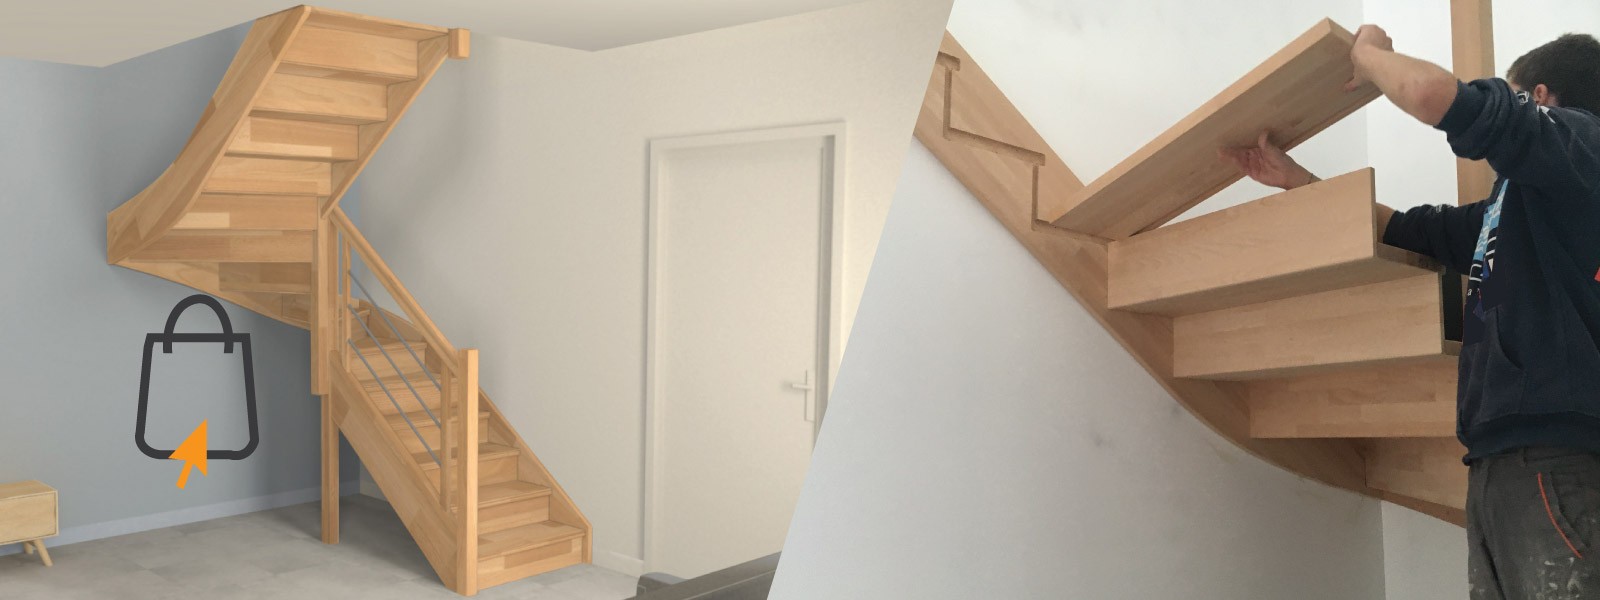 Oéba fabricant d'escaliers sur mesure en kit à installer vous même livré dans toute la Belgique